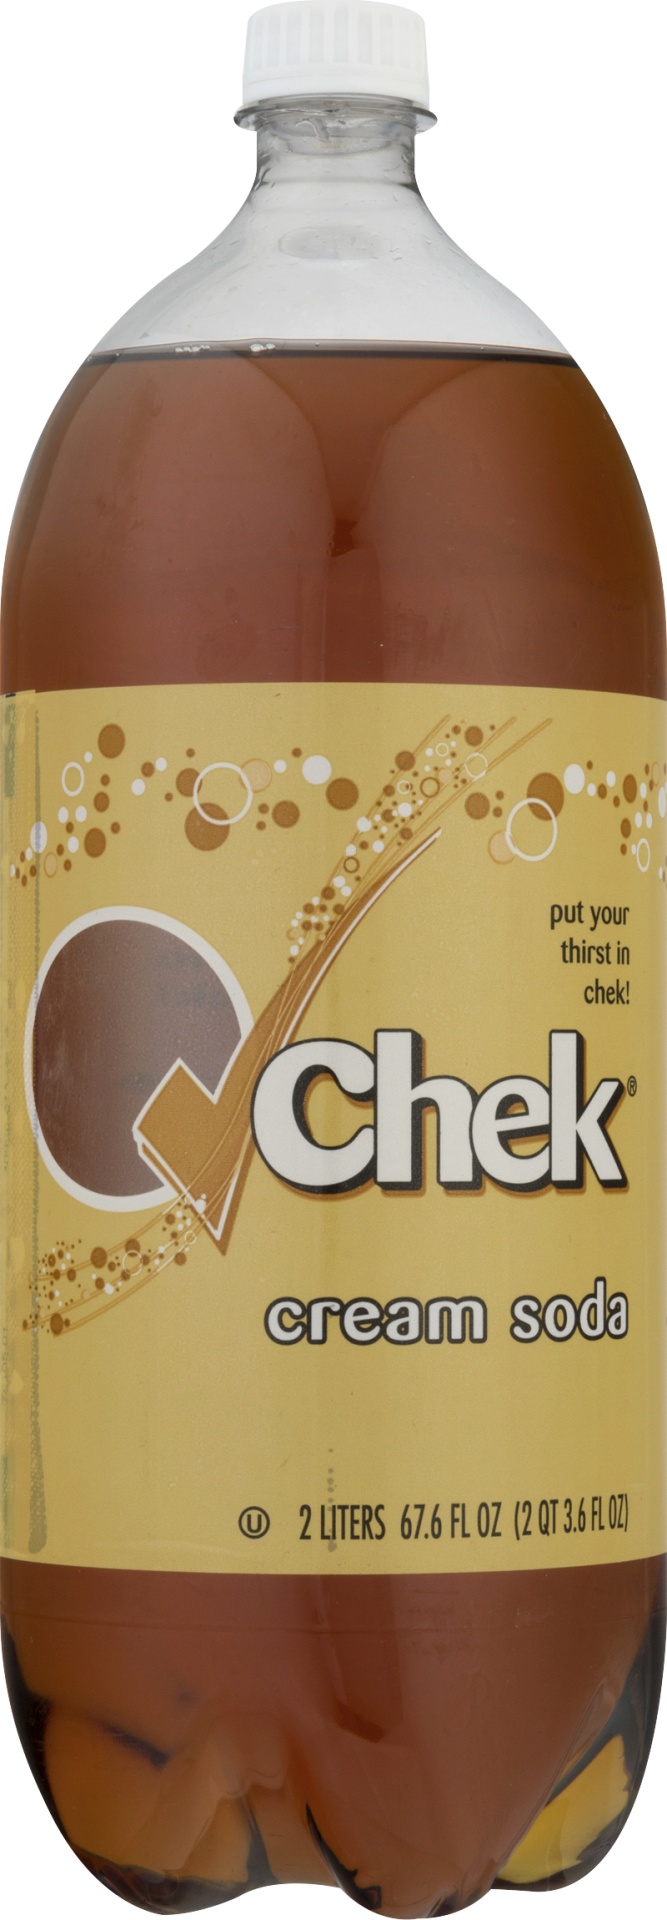 slide 1 of 1, Chek Cream Soda, 2 liter